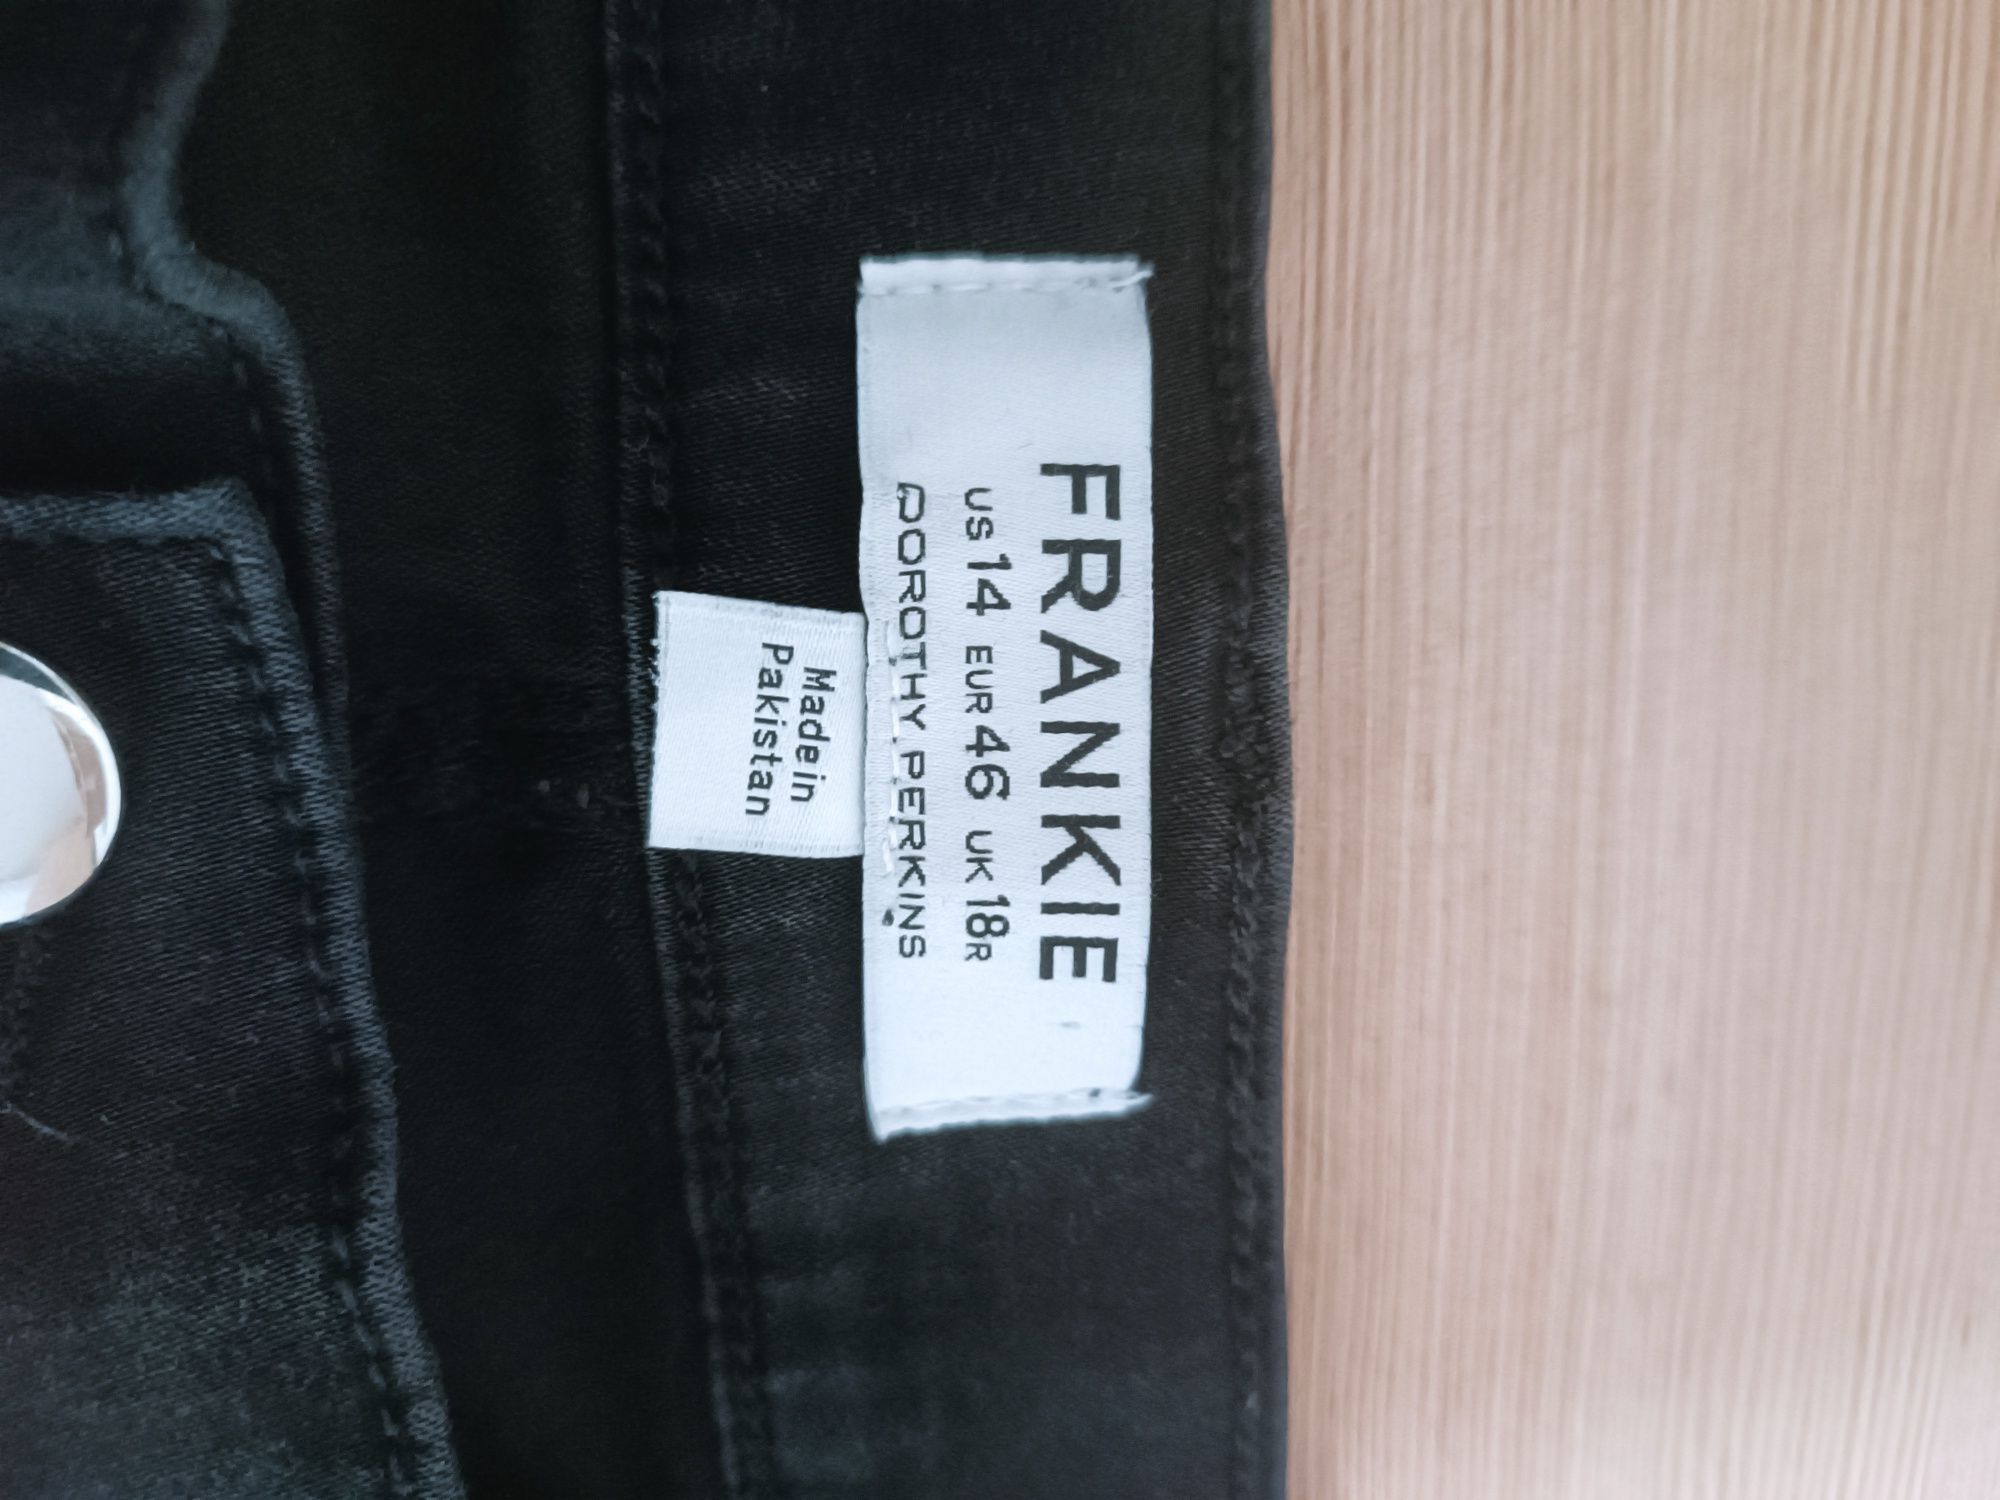 Czarne jeansowe spodnie Doroty Perkins (Frankie) nowe rozmiar 46/18